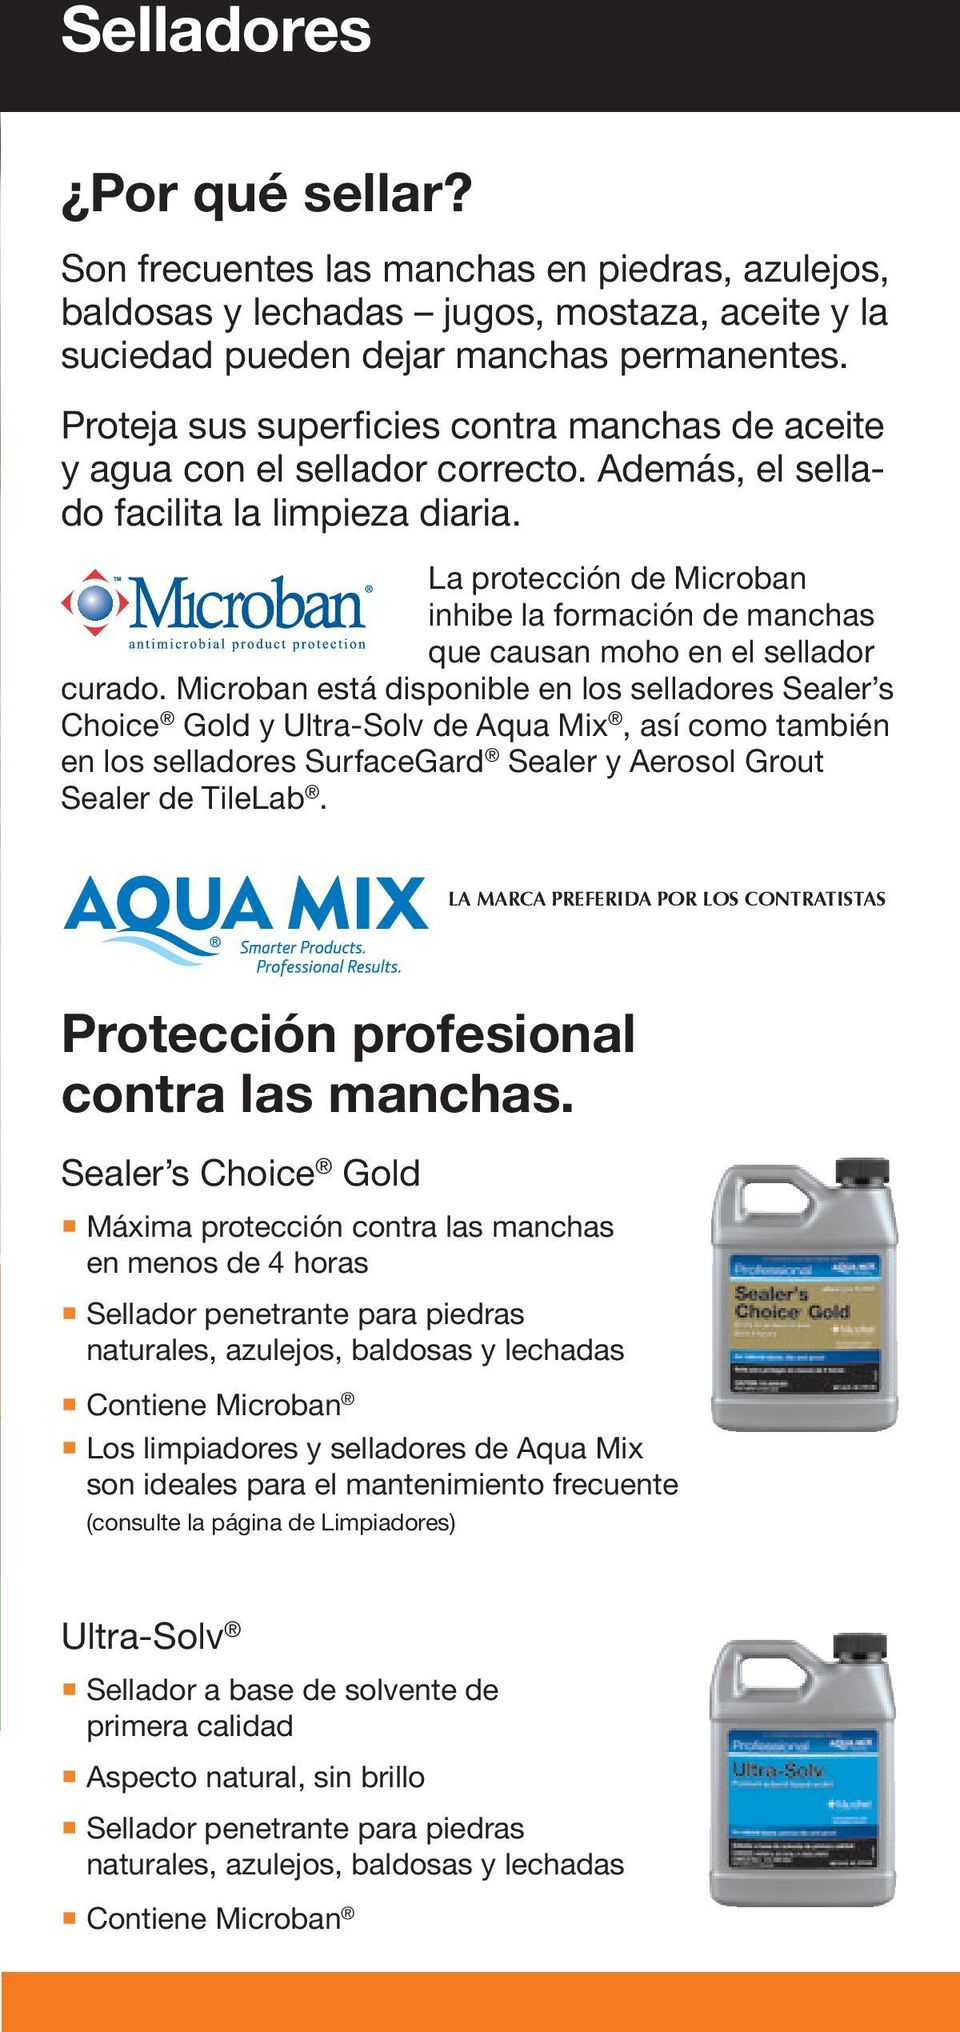 La protección de Microban inhibe la formación de manchas que causan moho en el sellador curado.